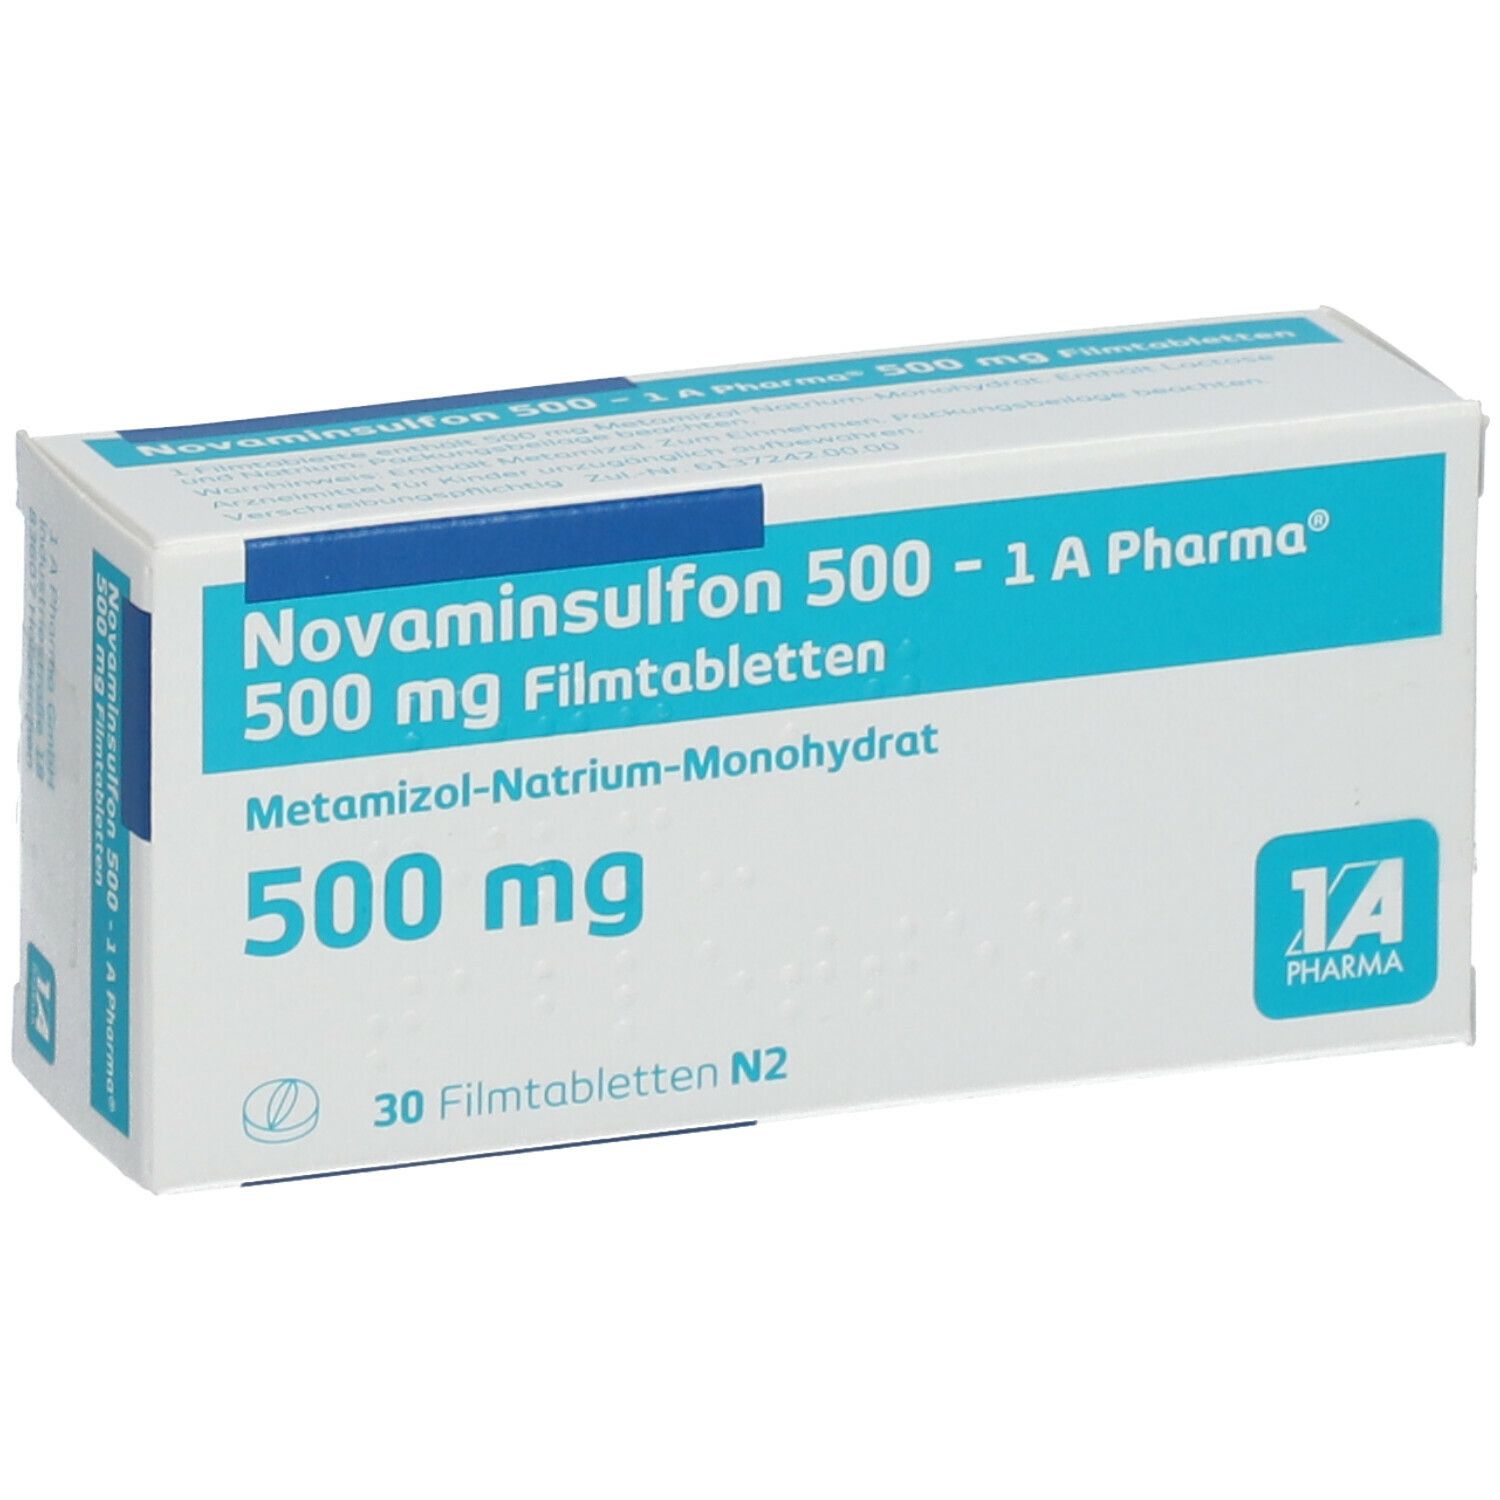 Novaminsulfon 500 mg stärker als ibuprofen 600